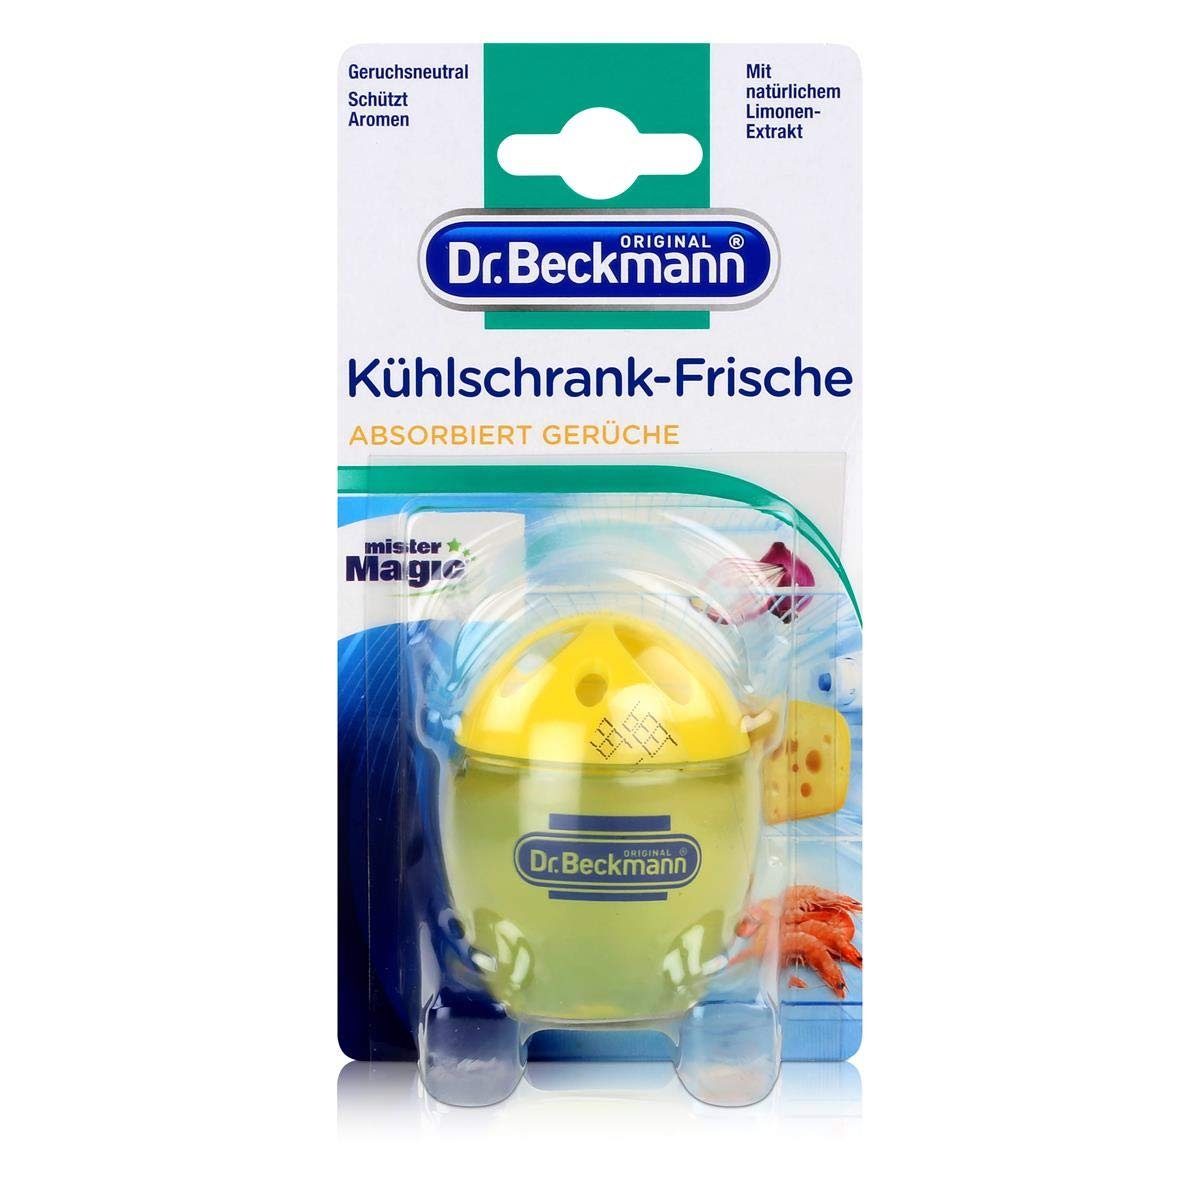 Dr. Beckmann Handgelenkstütze 6x Dr.Beckmann Kühlschrank Frische Ei Limonen-Extrakt 40g